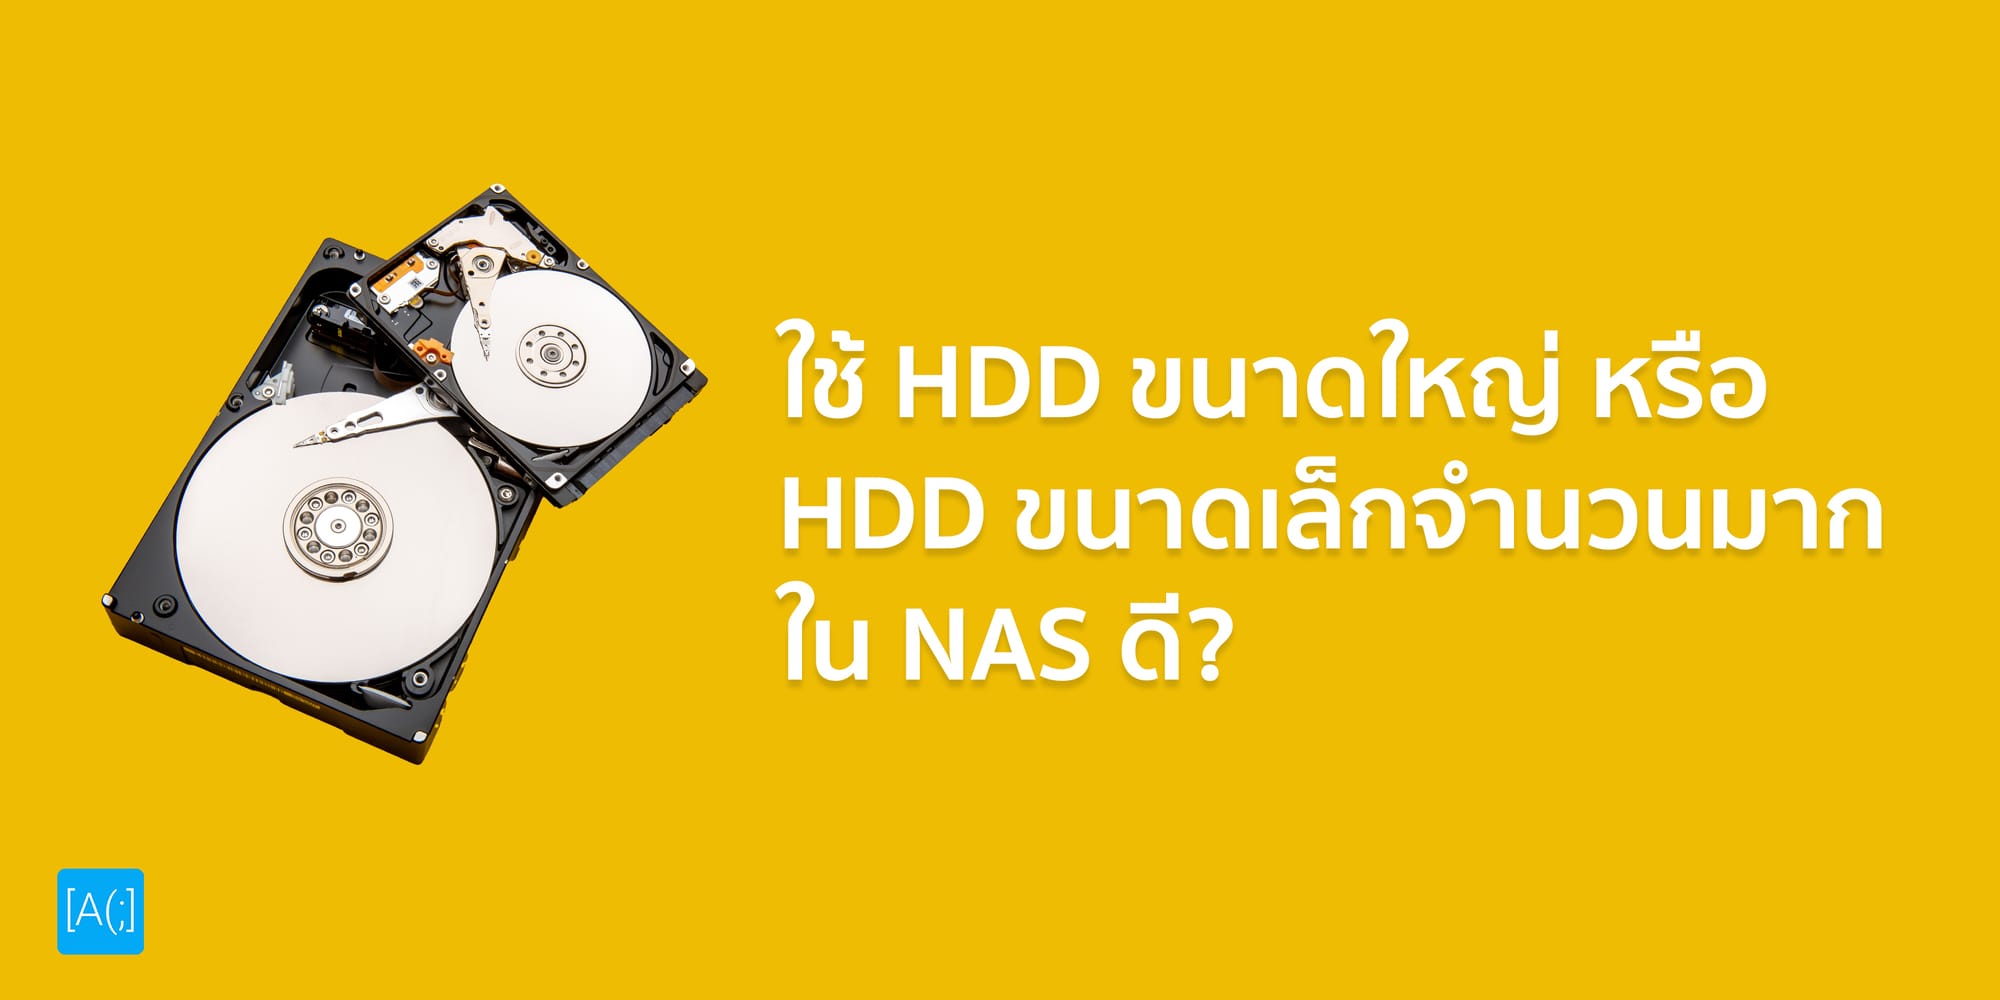 ใช้ HDD ขนาดใหญ่ หรือ HDD ขนาดเล็กจำนวนมากใน NAS ดี?